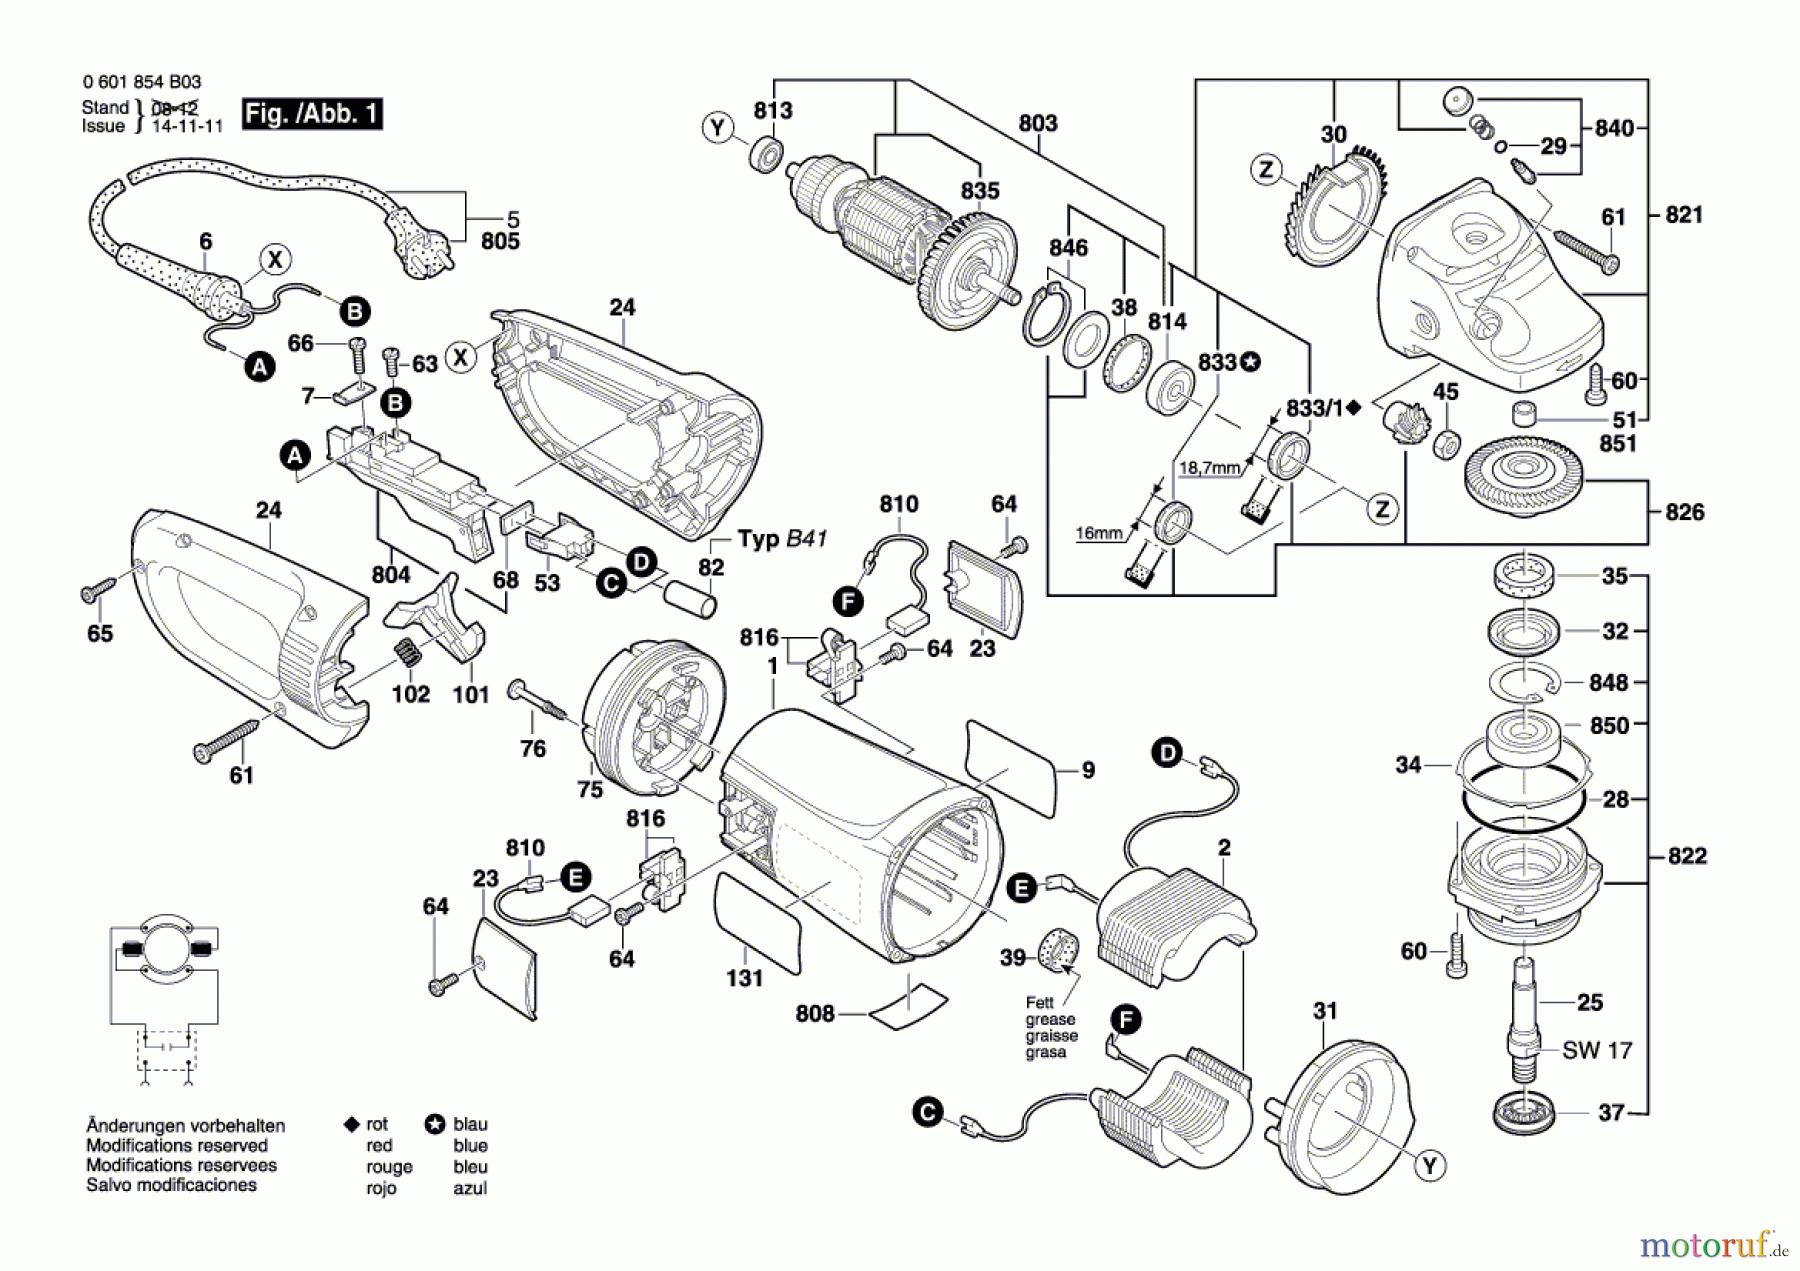  Bosch Werkzeug Winkelschleifer GWS 24-230 BV Seite 1